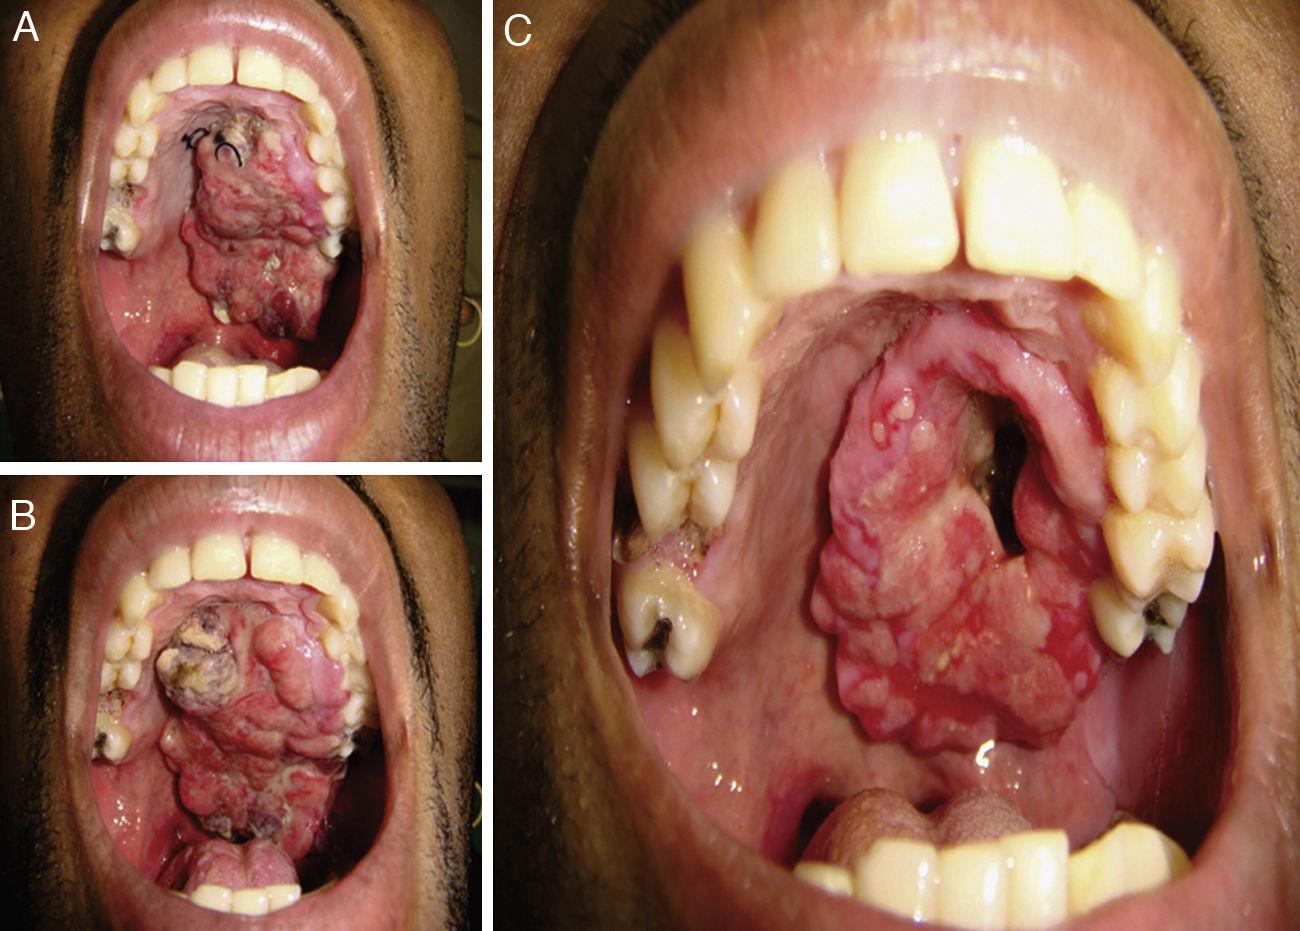 Thyreos - O câncer de mandíbula, é um tipo raro de tumor que se